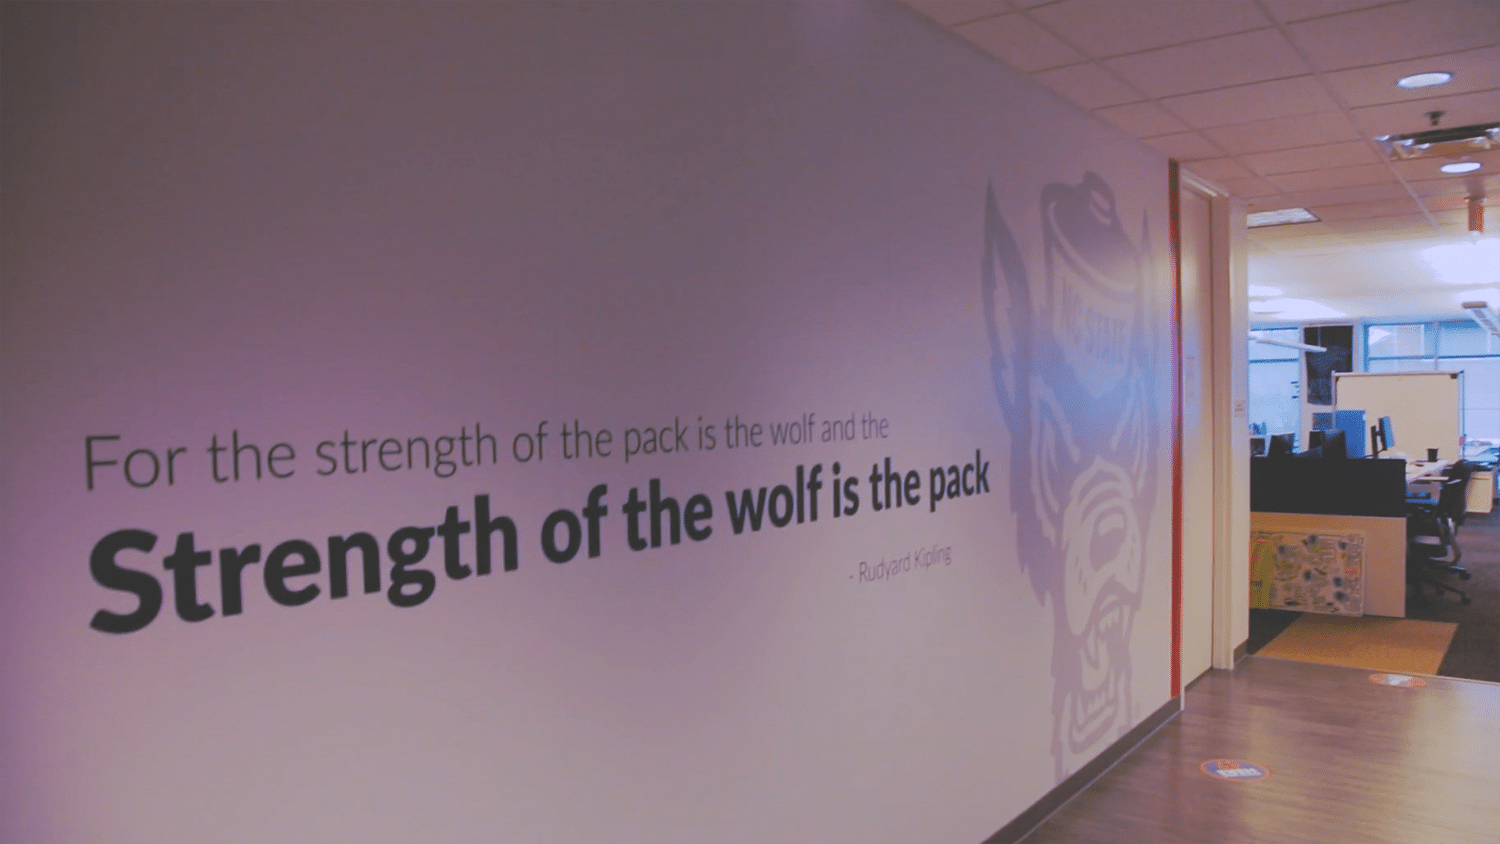 律商联讯公司(LexisNexis)办公室走廊上的一幅壁画上写着:“狼群的力量在于狼，狼的力量在于狼群。”